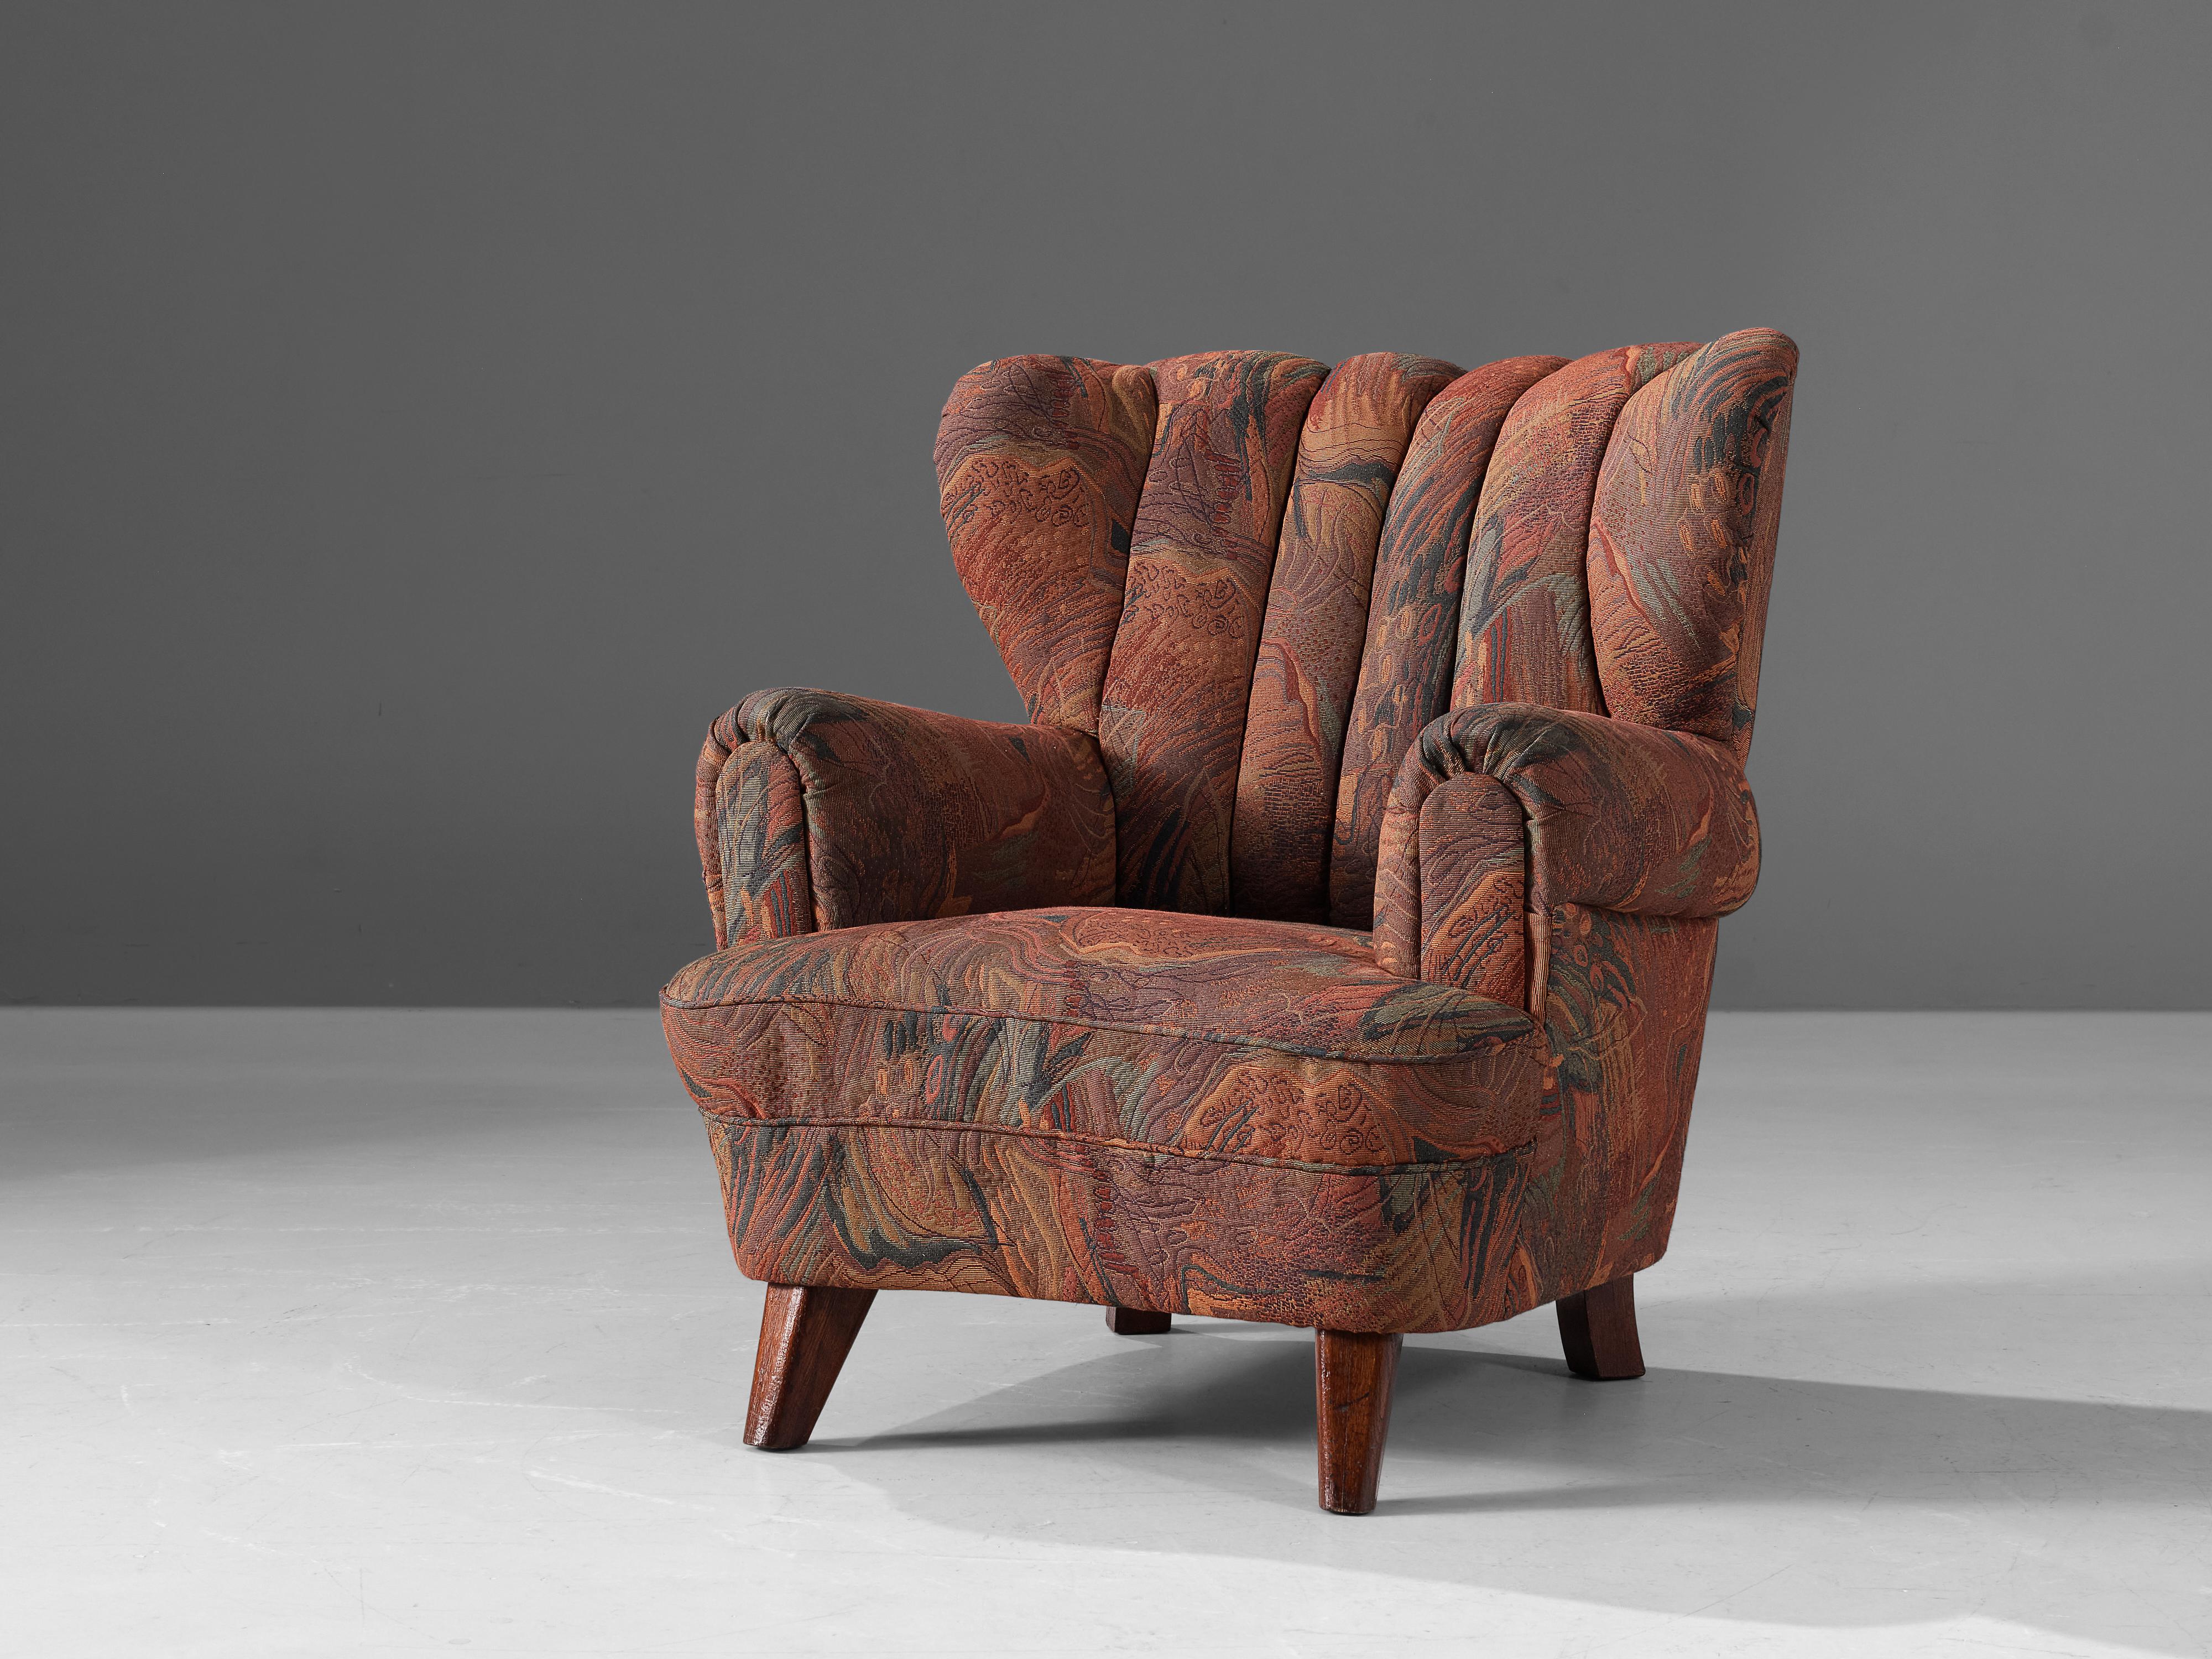 Fauteuil, tissu, bois, Danemark, années 1950

Cette belle et confortable chaise danoise est dotée d'ailes et d'accoudoirs incurvés. Grâce à ses accoudoirs et à son assise voluptueux, la chaise prend une forme caractéristique et visuellement